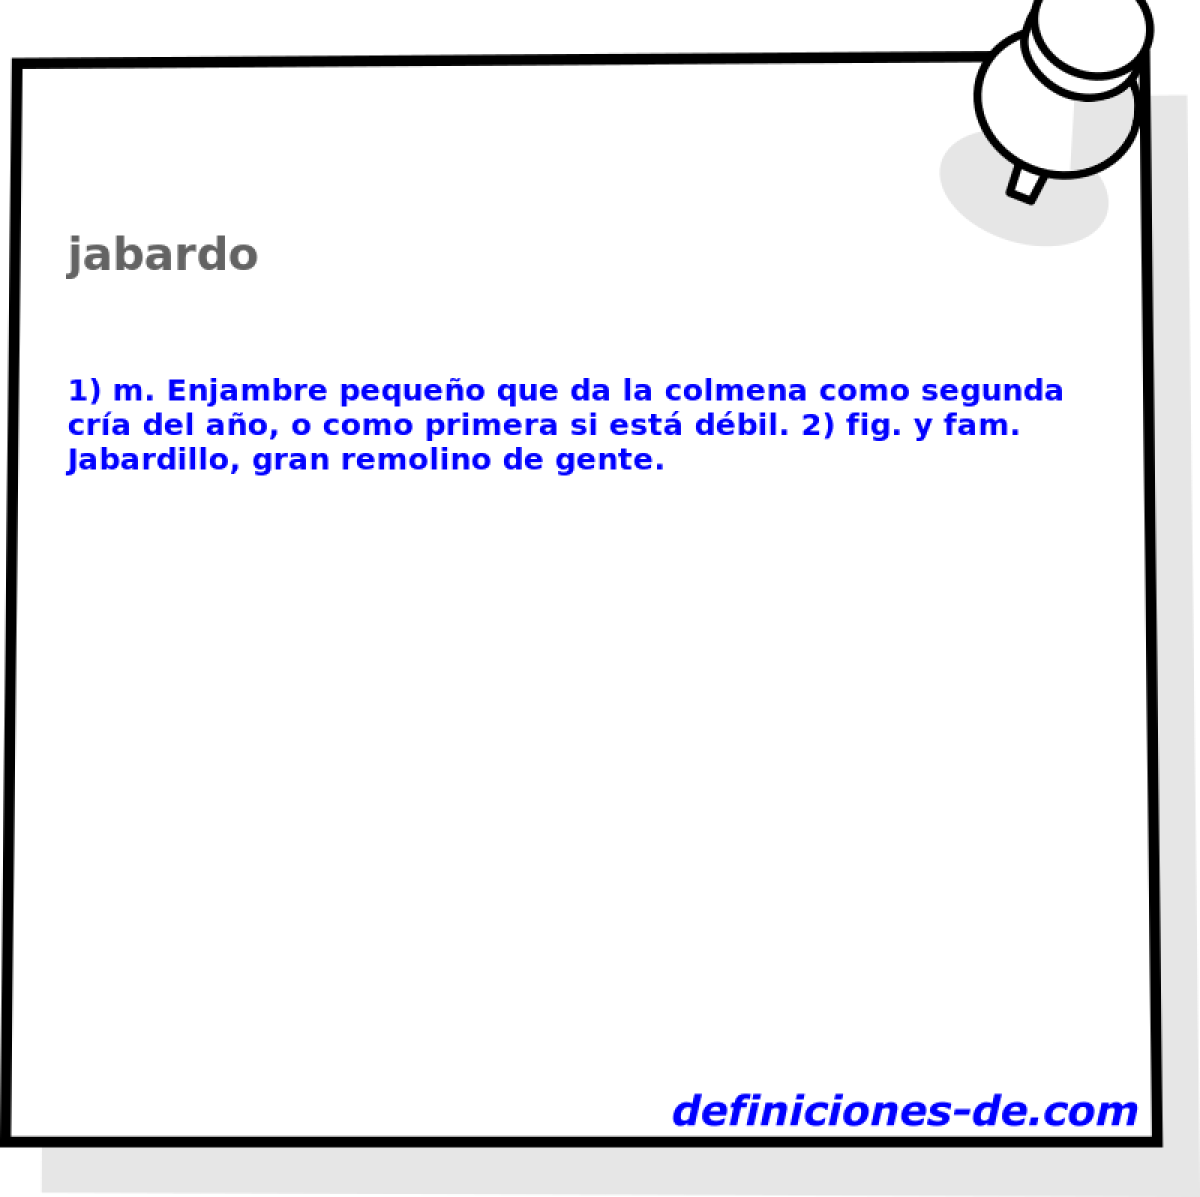 jabardo 